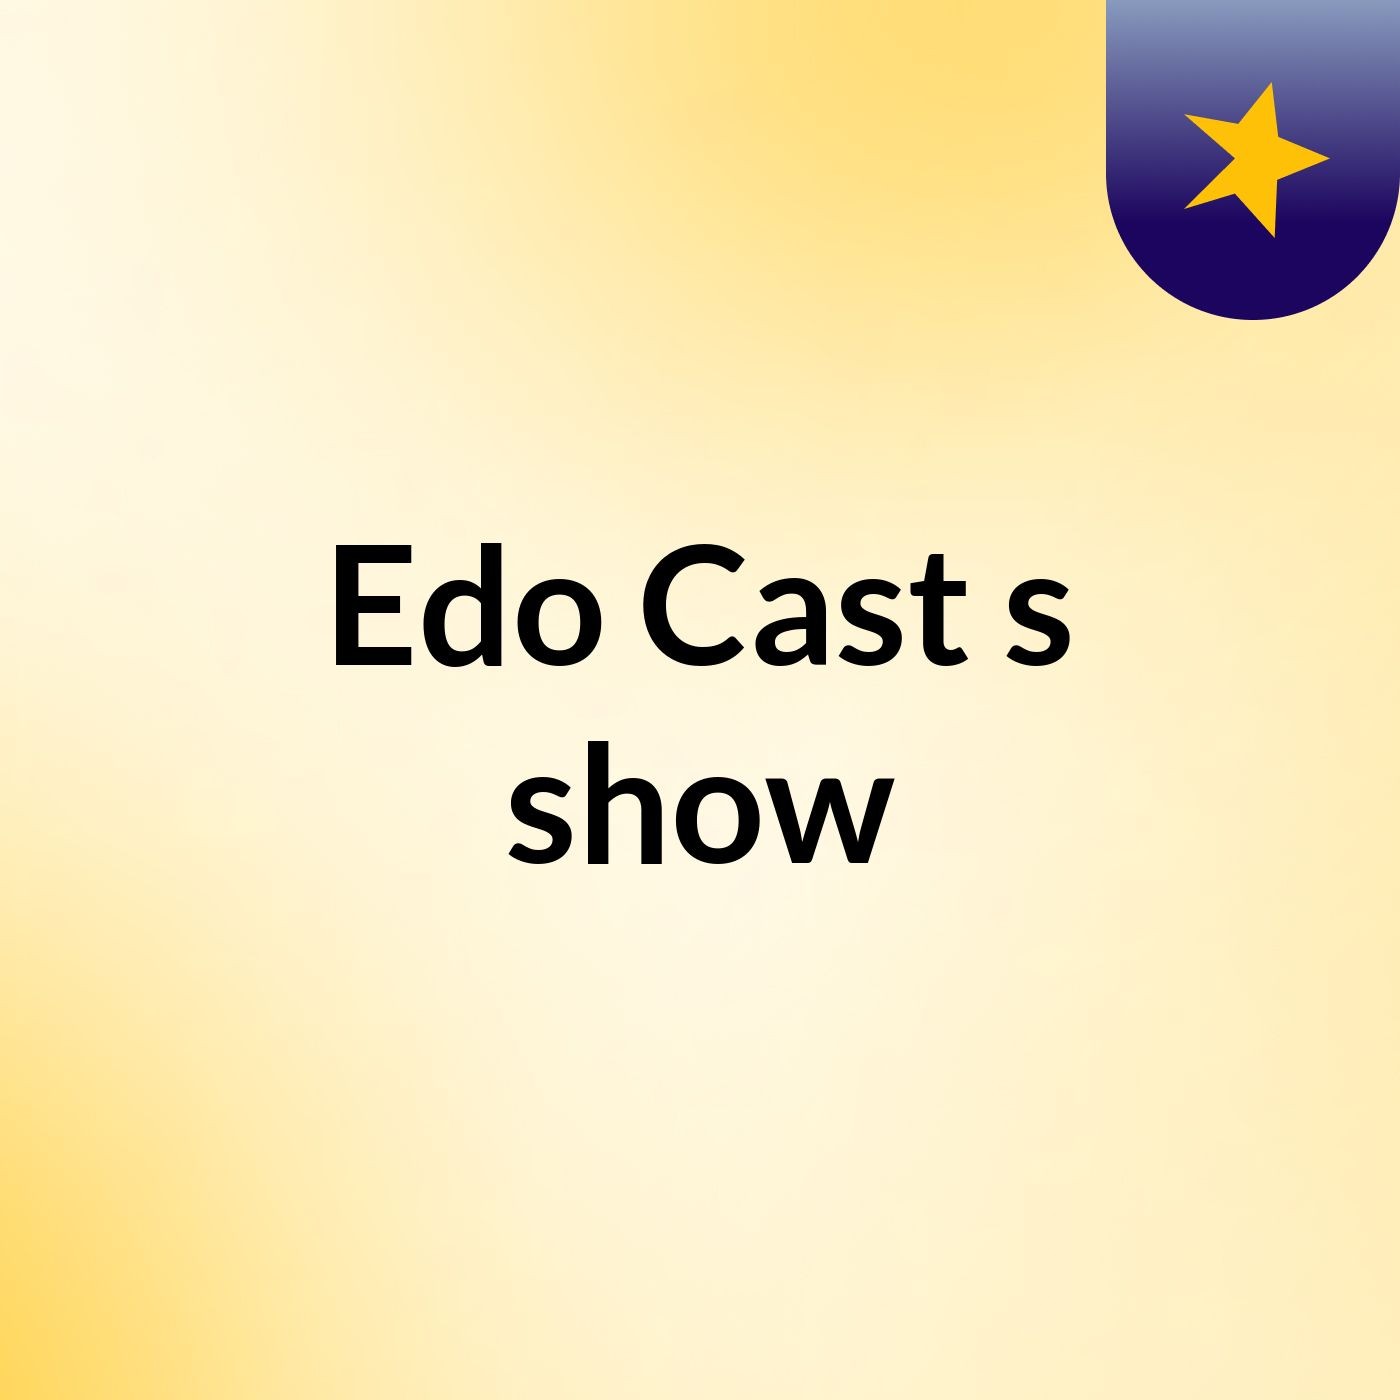 Edo Cast's show